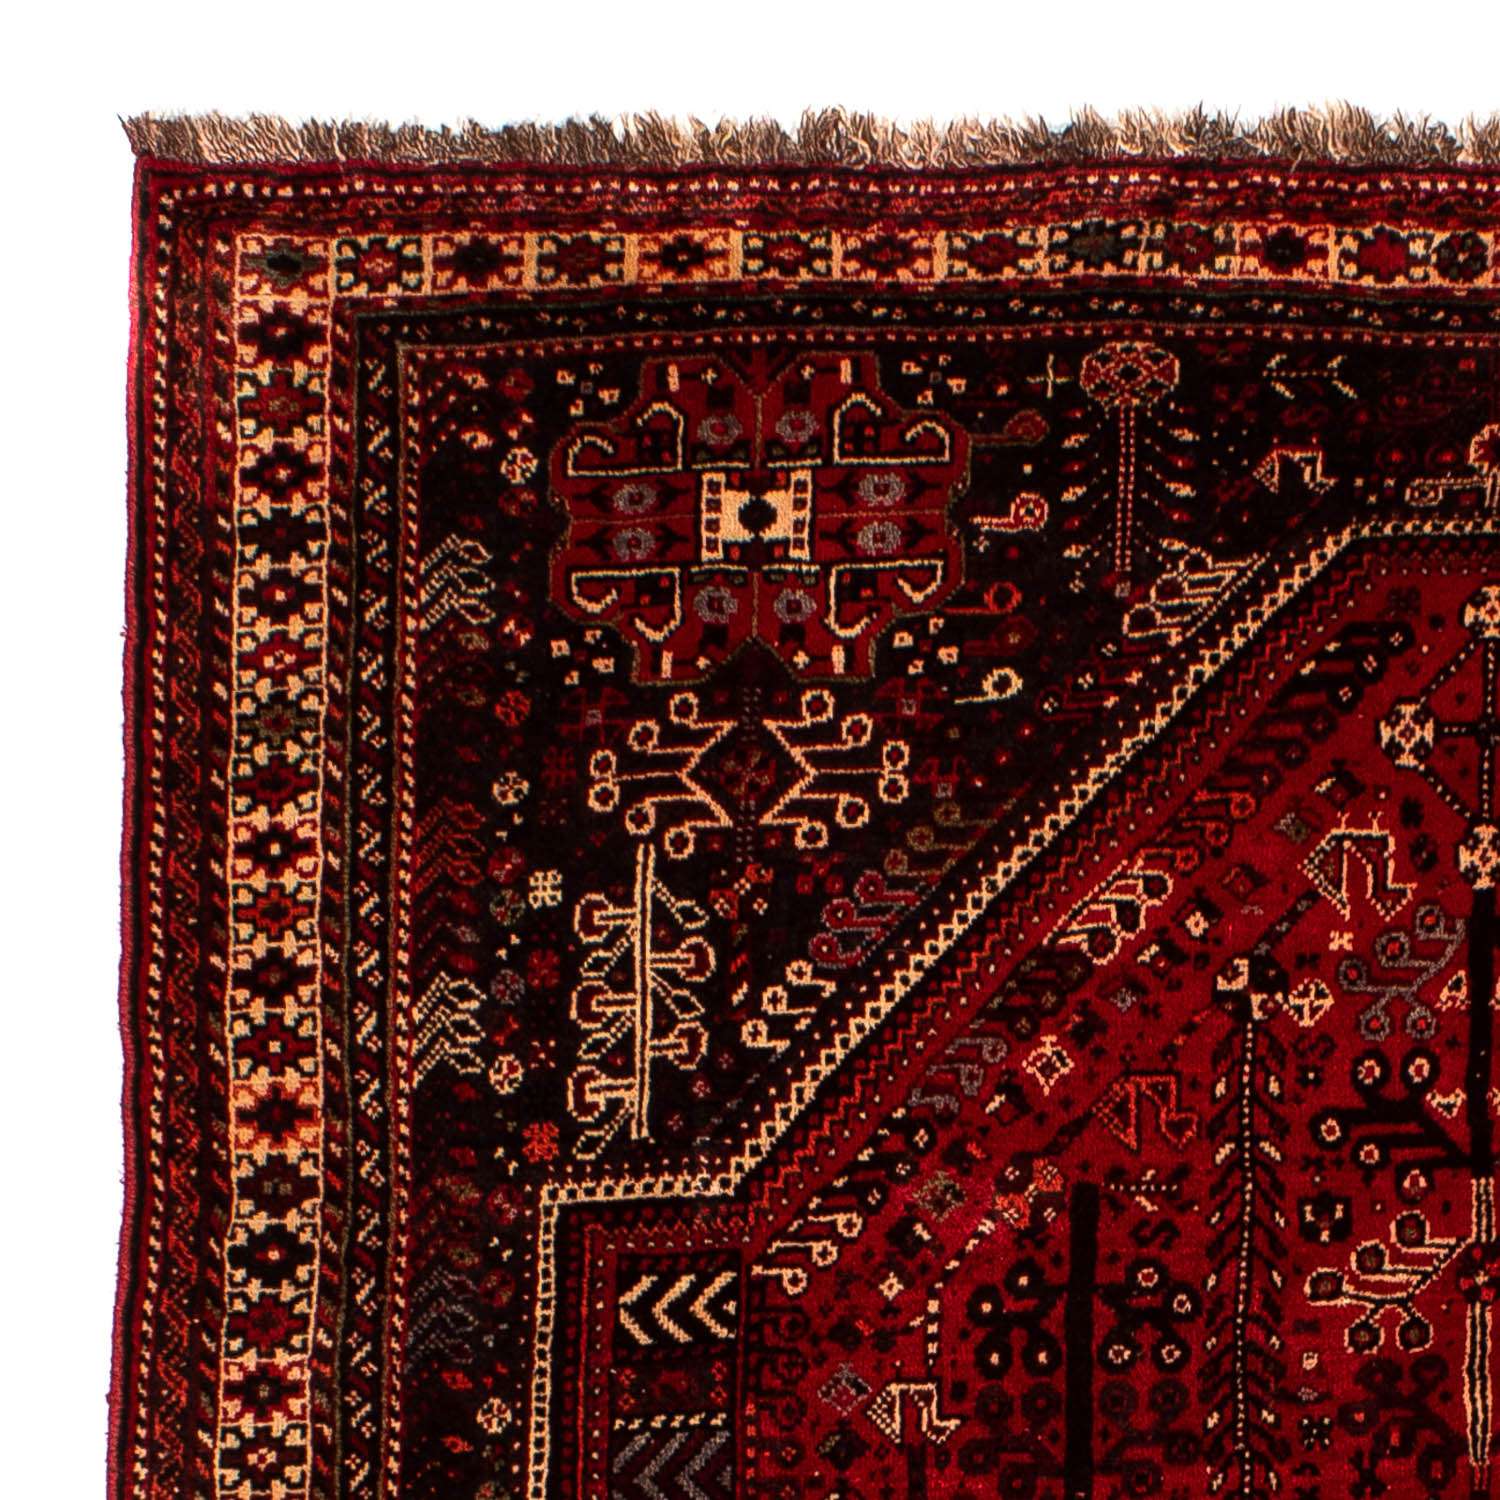 Tapis persan - Nomadic - 245 x 190 cm - rouge foncé